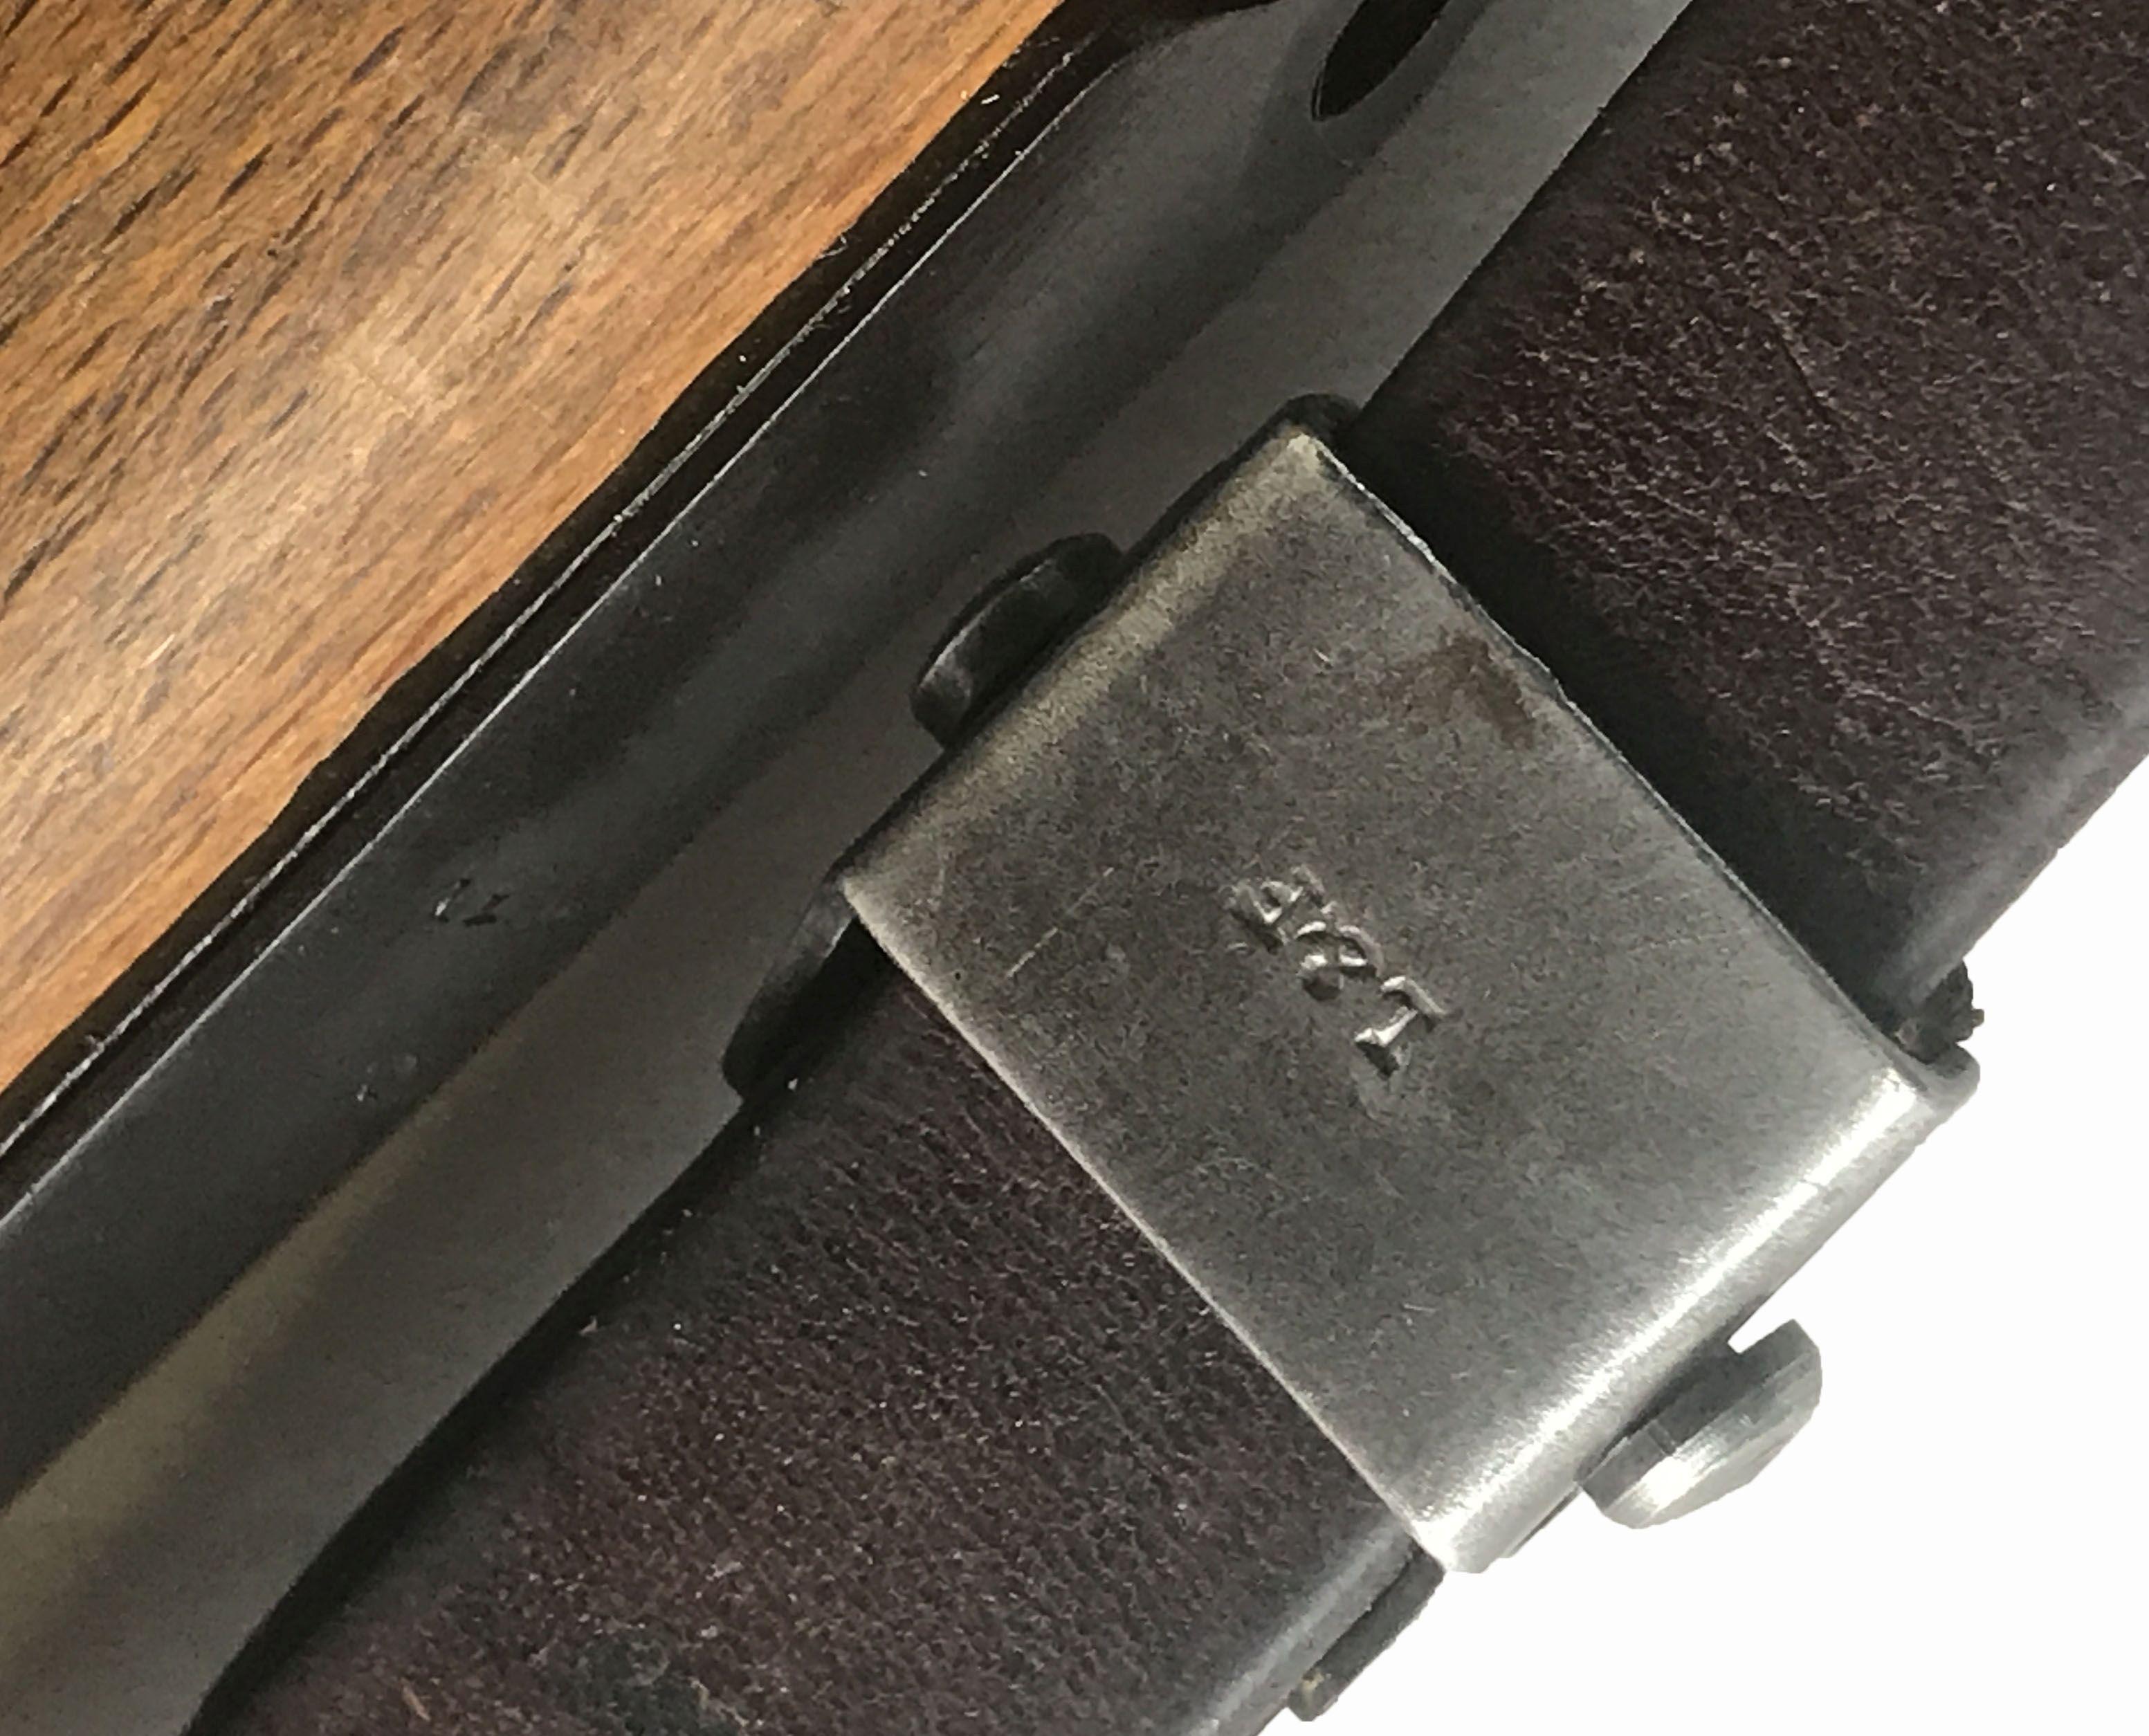 Mauser 98 BNZ 8x57 Rifle with Scope & Claw Mounts Firearm